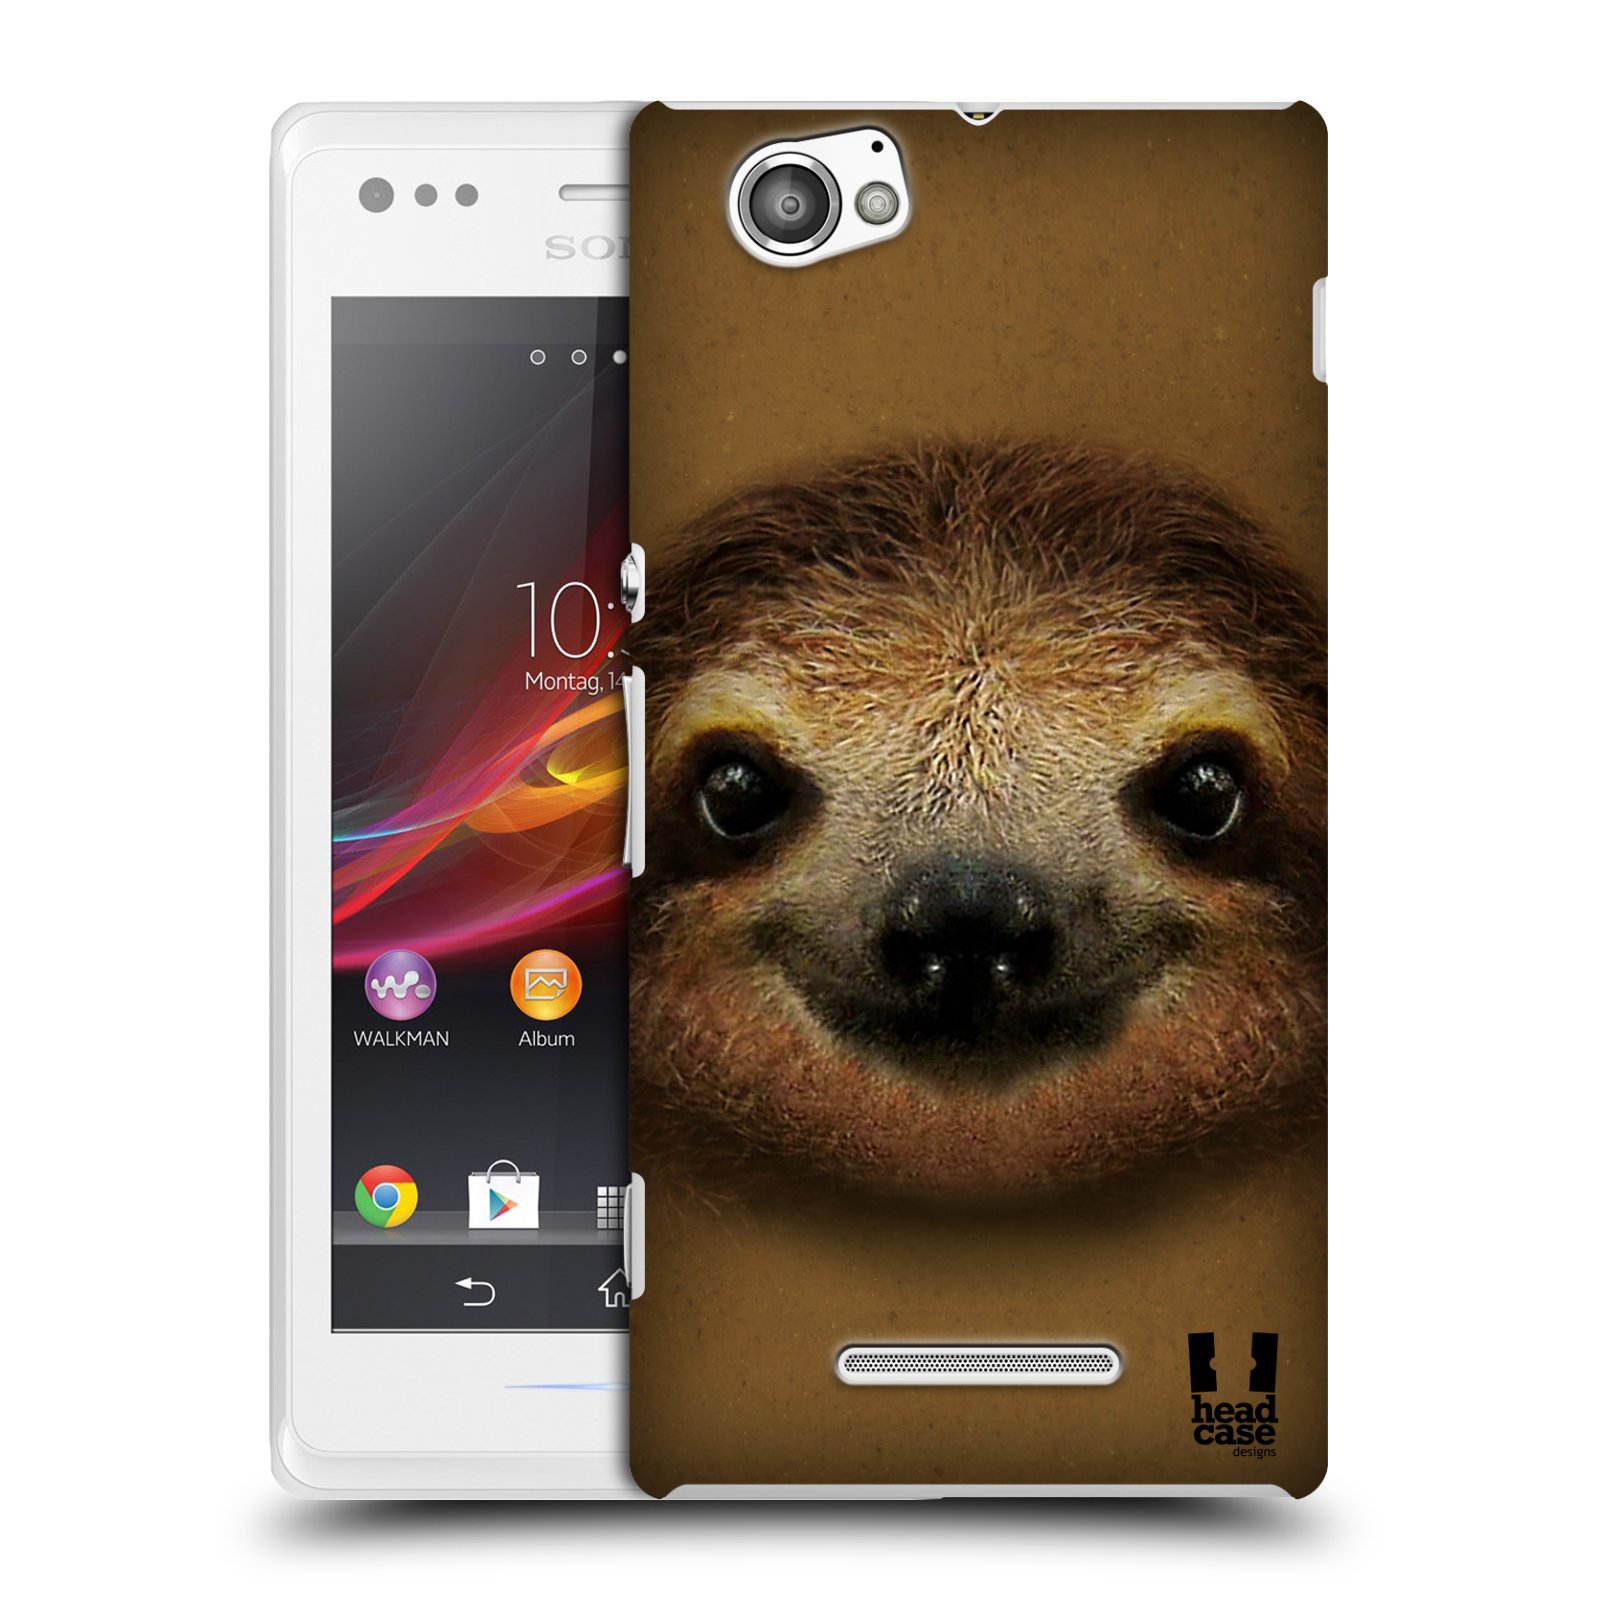 HEAD CASE plastový obal na mobil Sony Xperia M vzor Zvířecí tváře 2 lenochod